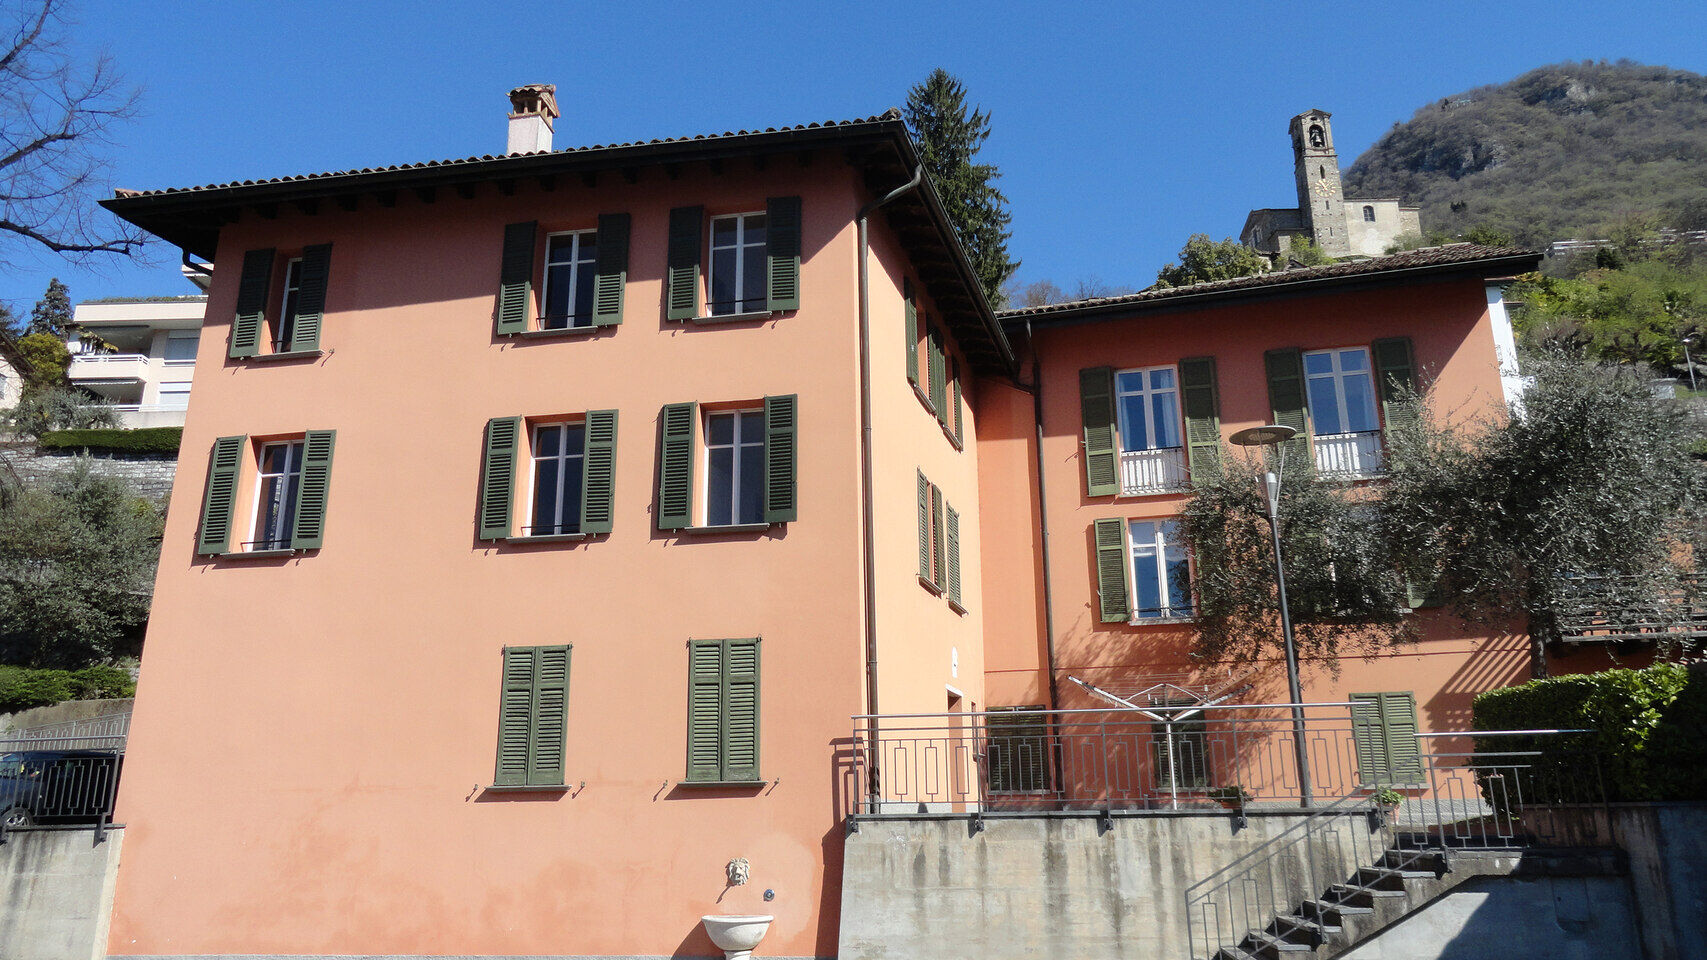 Shkenca njerëzore dhe natyrore: Casa Carla Cattaneo në Castagnola, në territorin e Komunës së Luganos, në Kantonin Ticino: do të presë Fondacionin IBSA për Kërkime Shkencore, i cili i vendos vetes synime të reja ambicioze